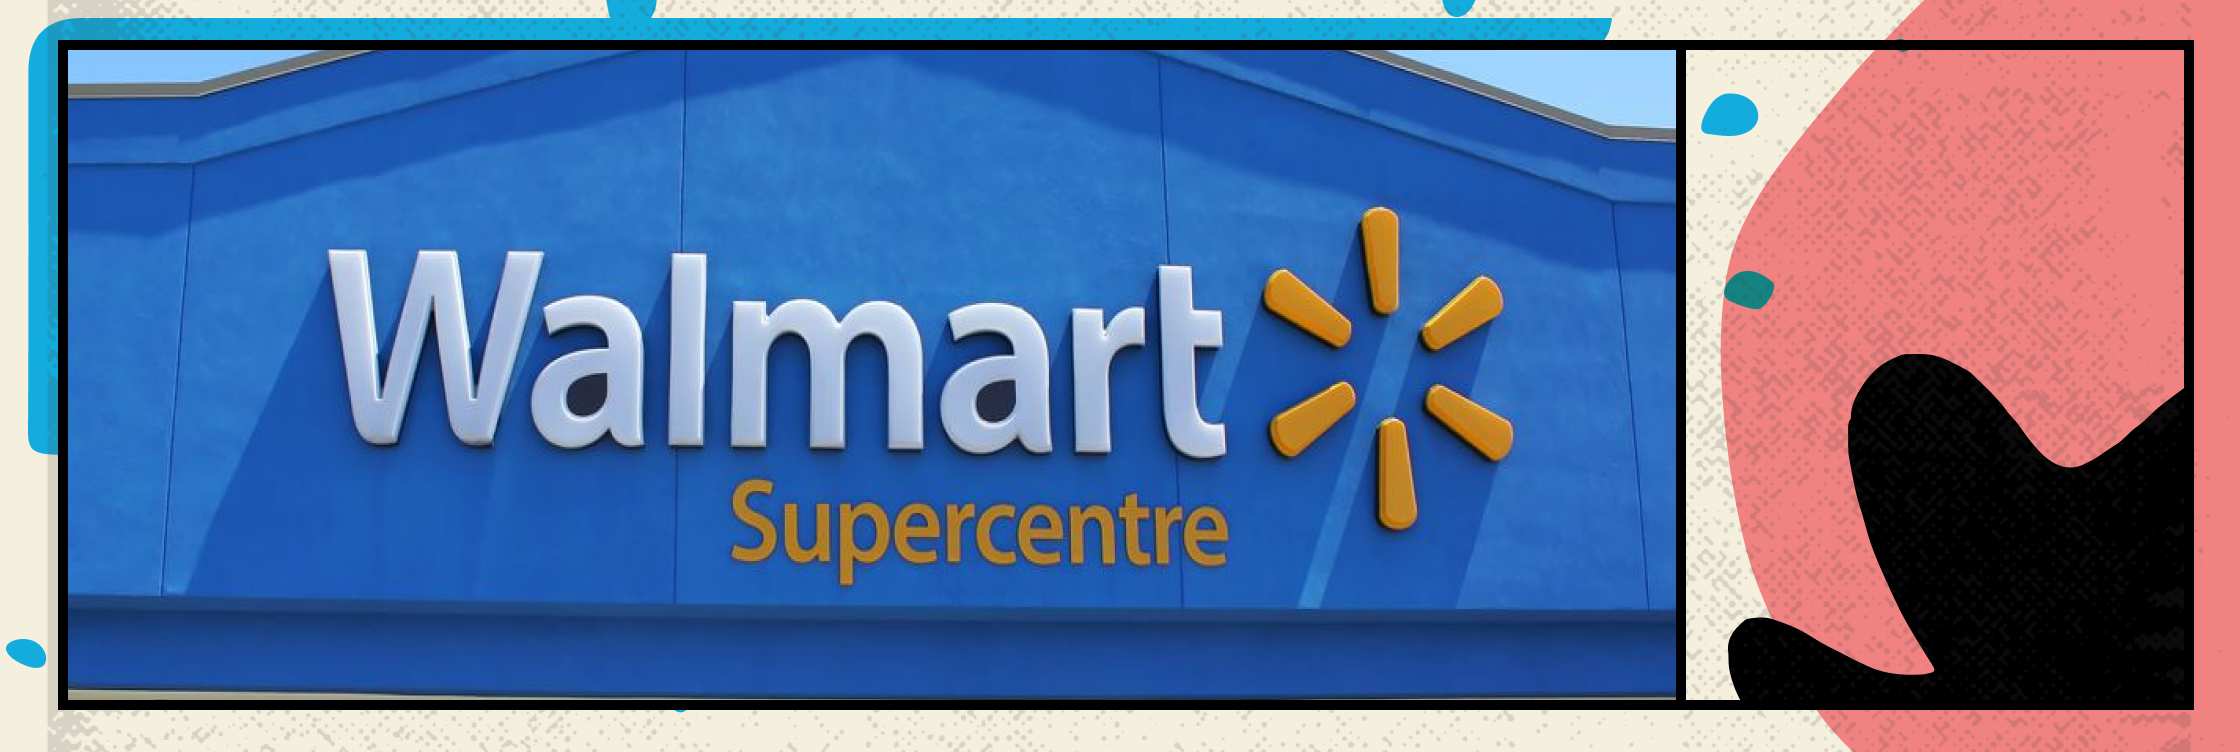 Walmart Canada оптимизировала логистику благодаря внедрению блокчейна